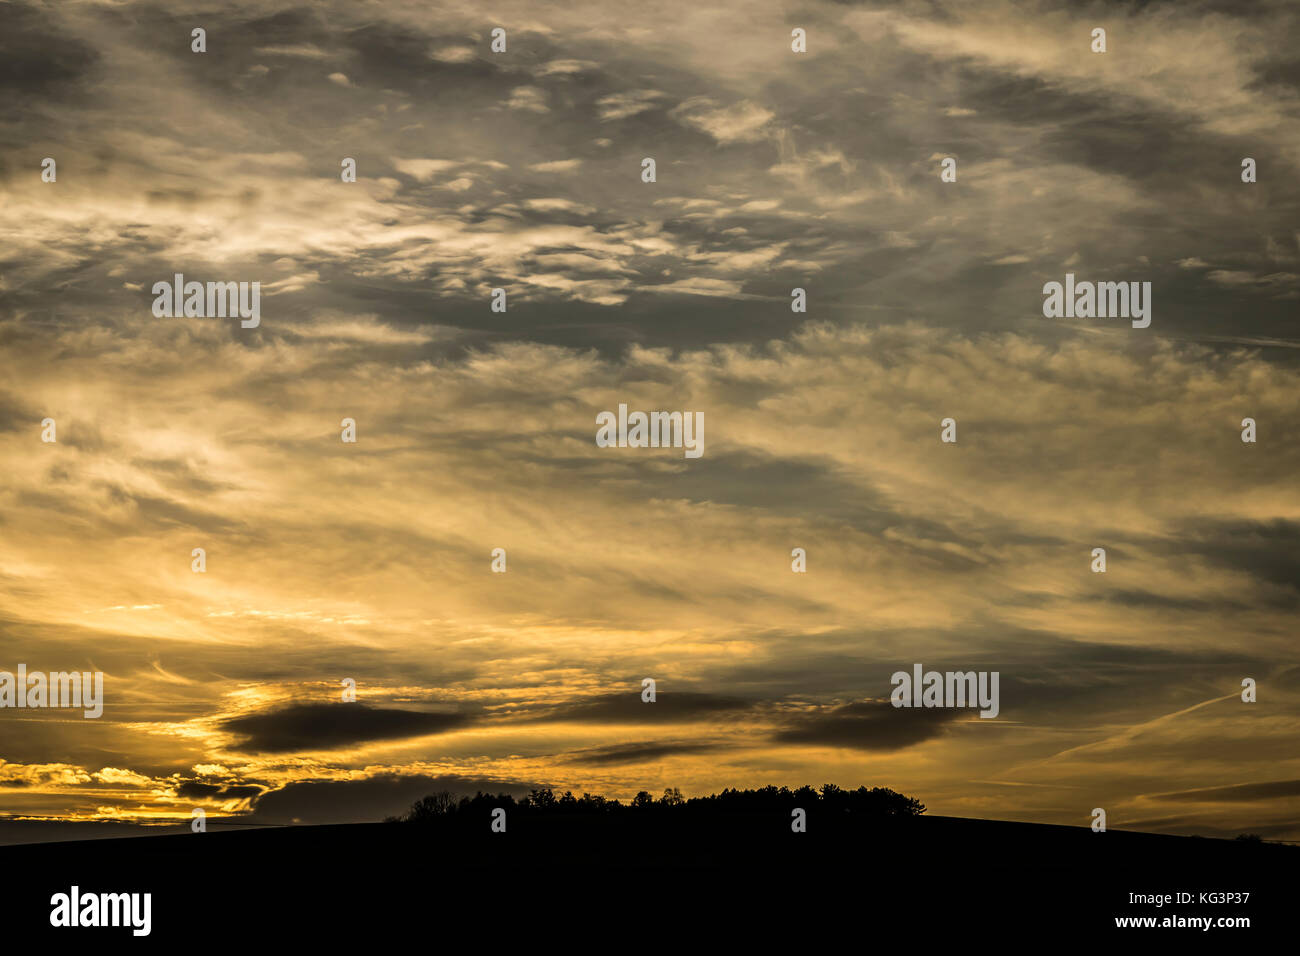 Dramatische Himmel bei Sonnenuntergang. goldenen Licht und schwarze Wolken an stürmischen Wolken über dem Horizont. Stockfoto